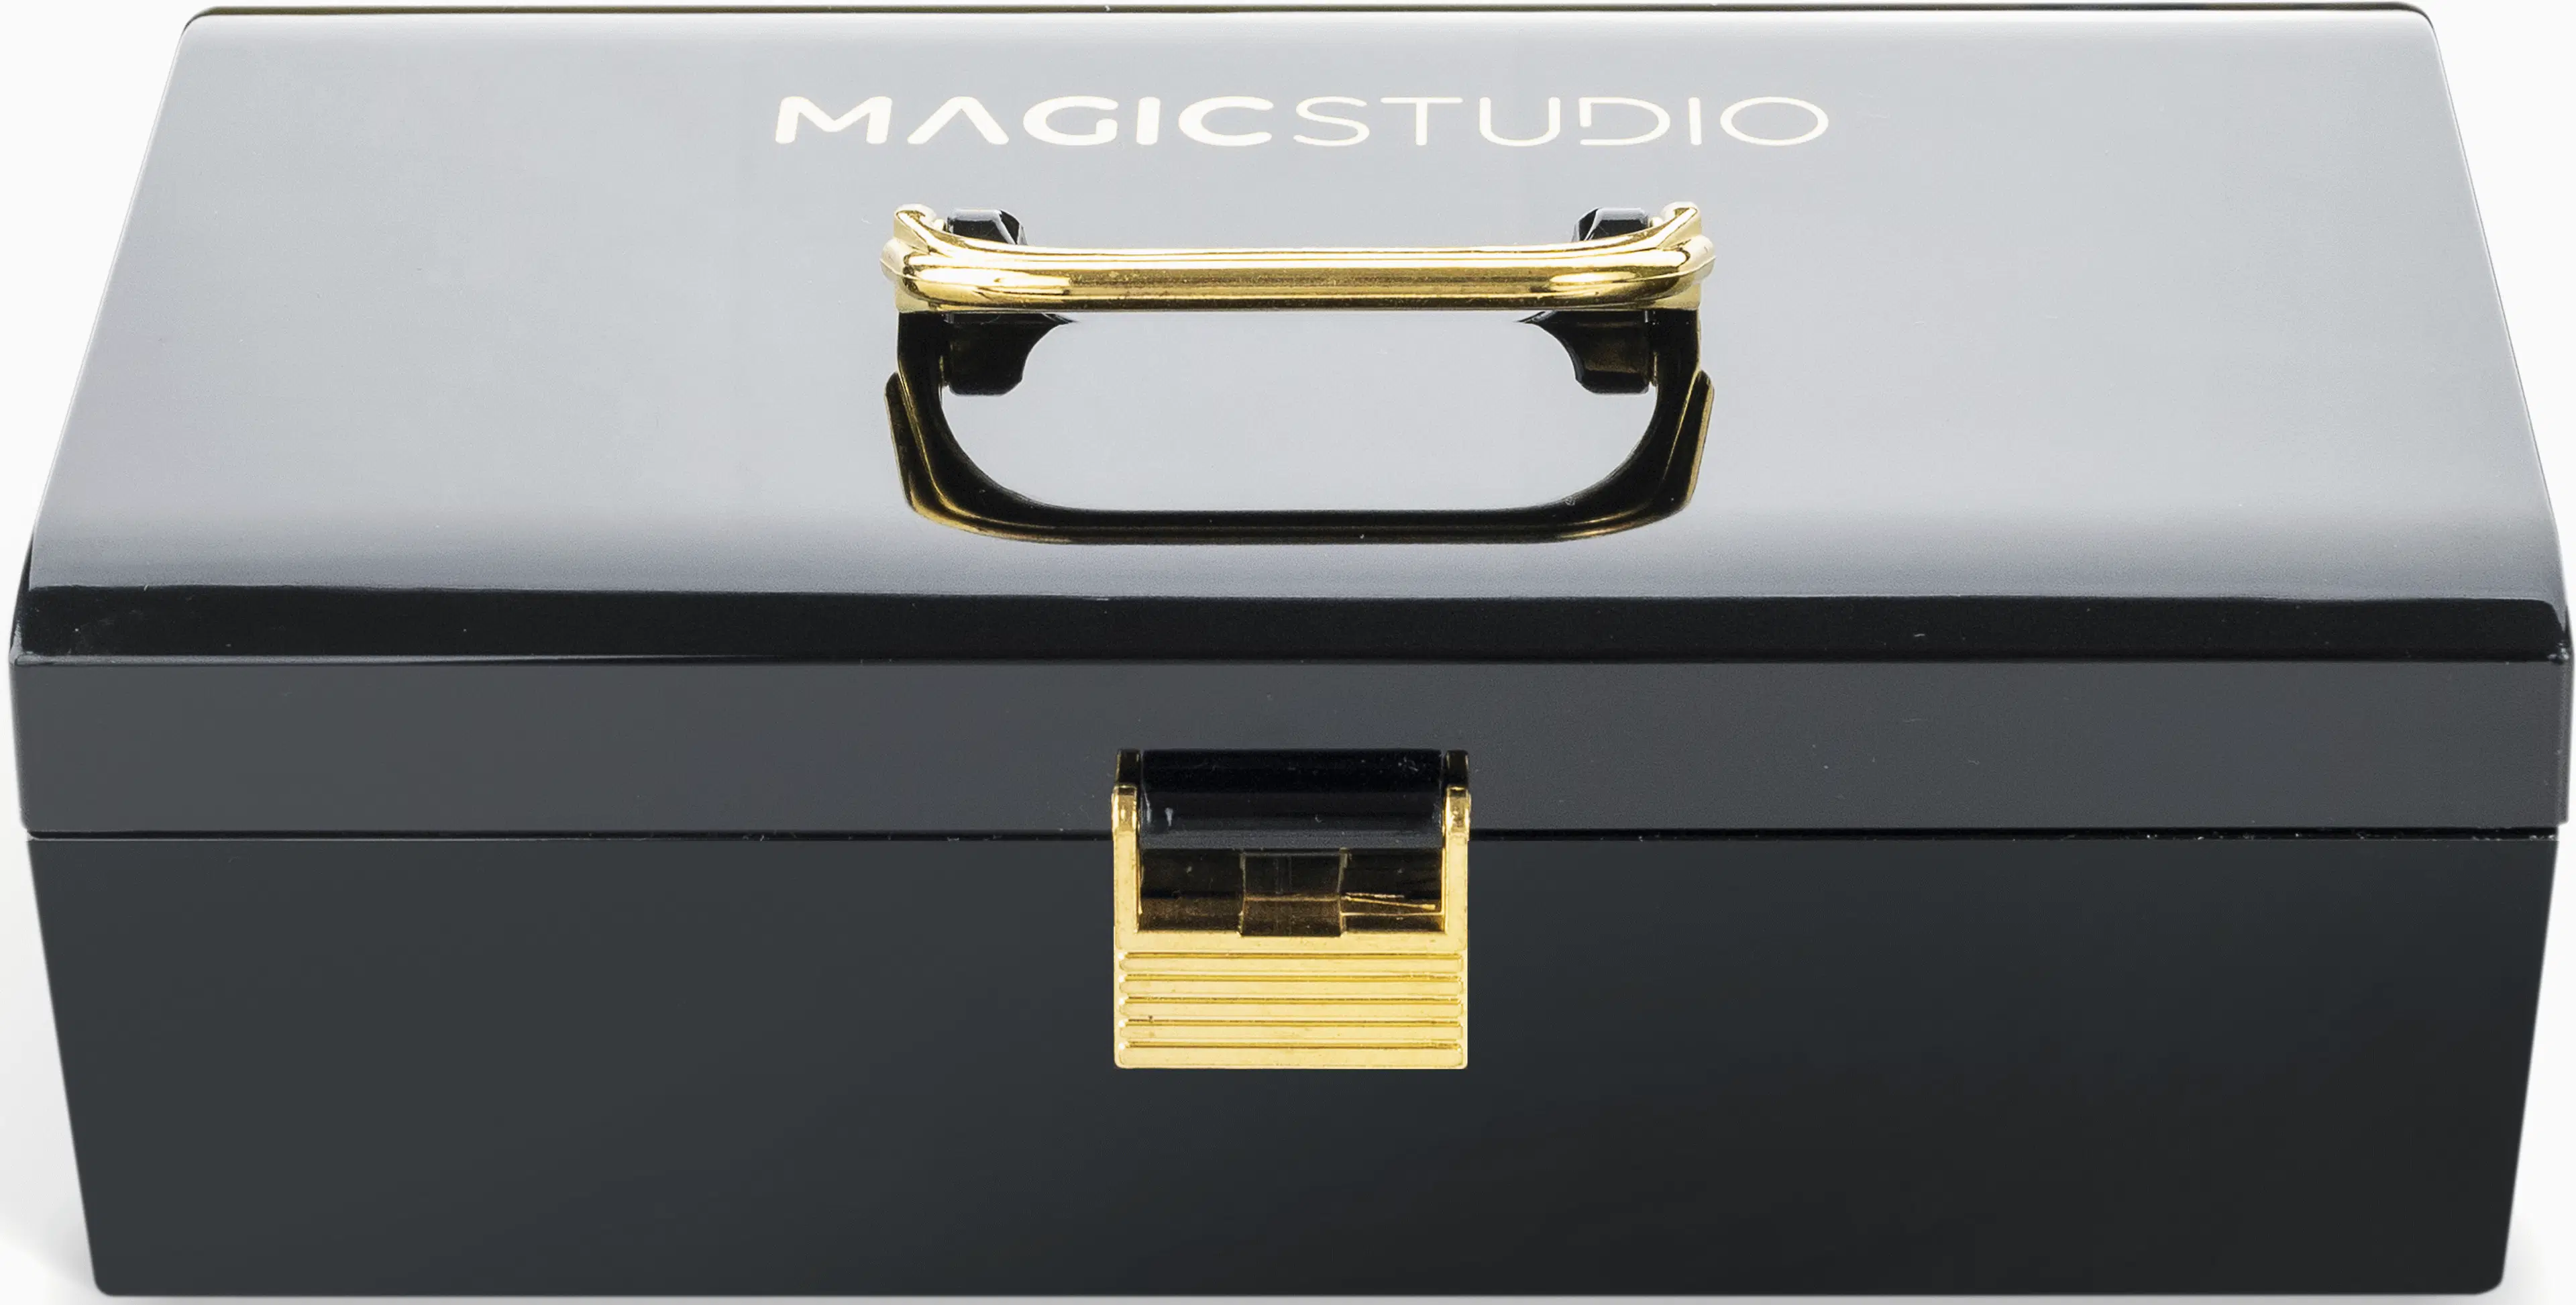 Magic Studio COLORFUL Greatest colors case meikkisalkku